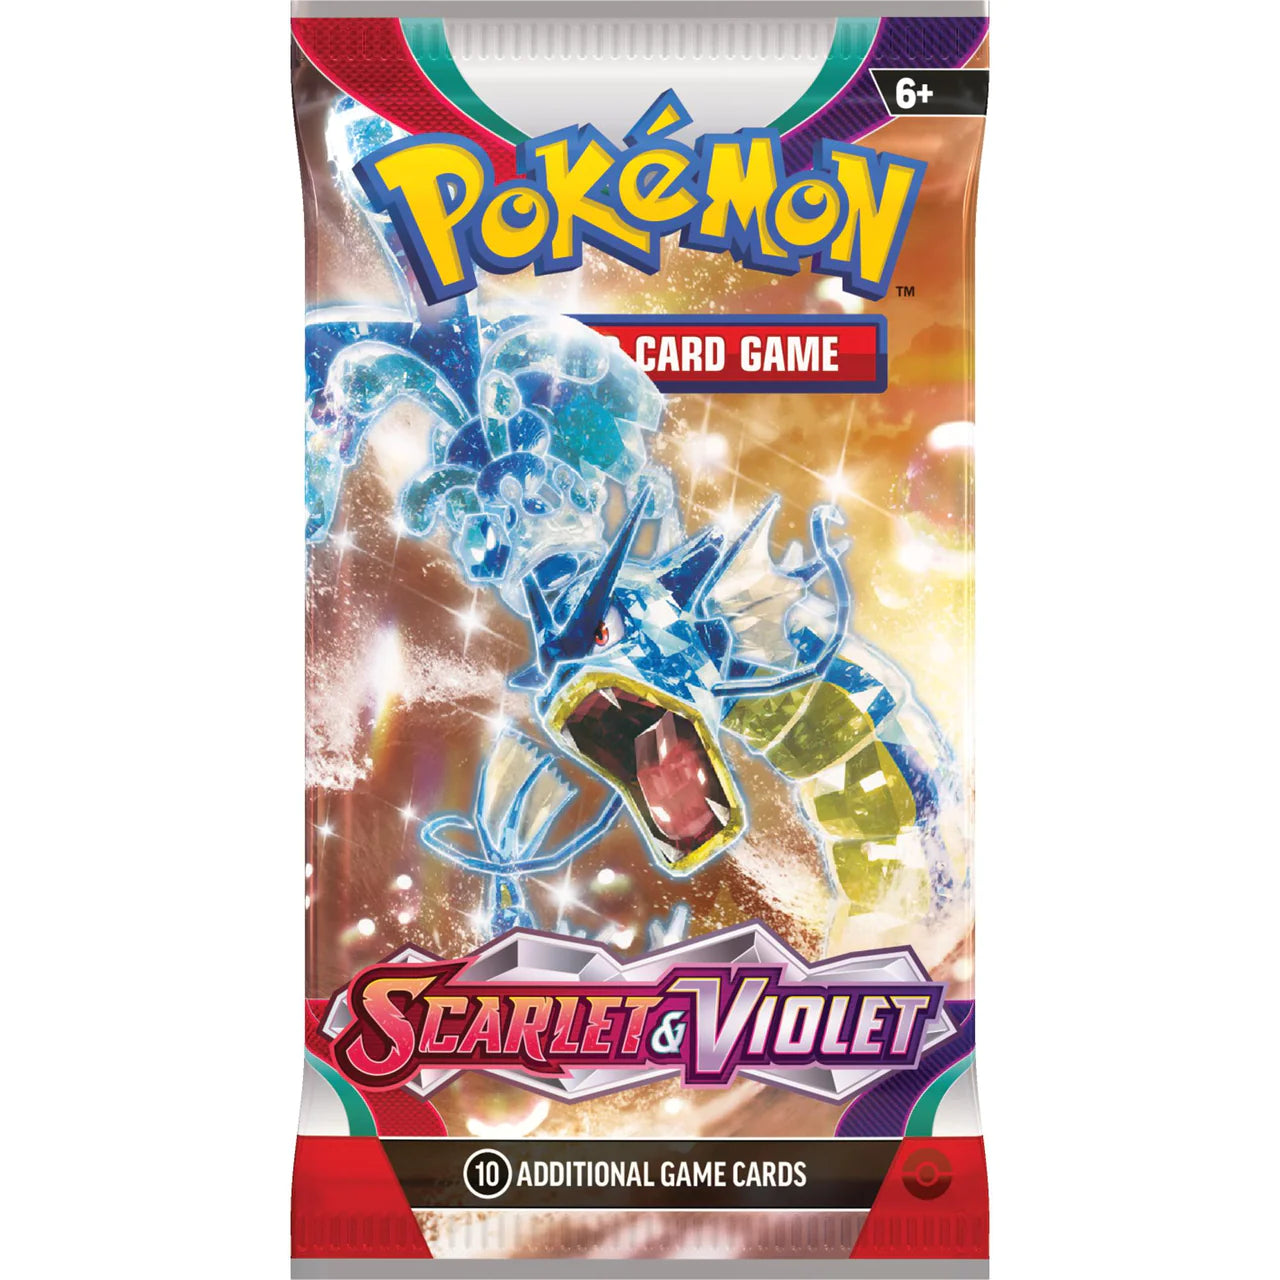 Pokémon – Scarlet Violet – Booster (Individual pack)